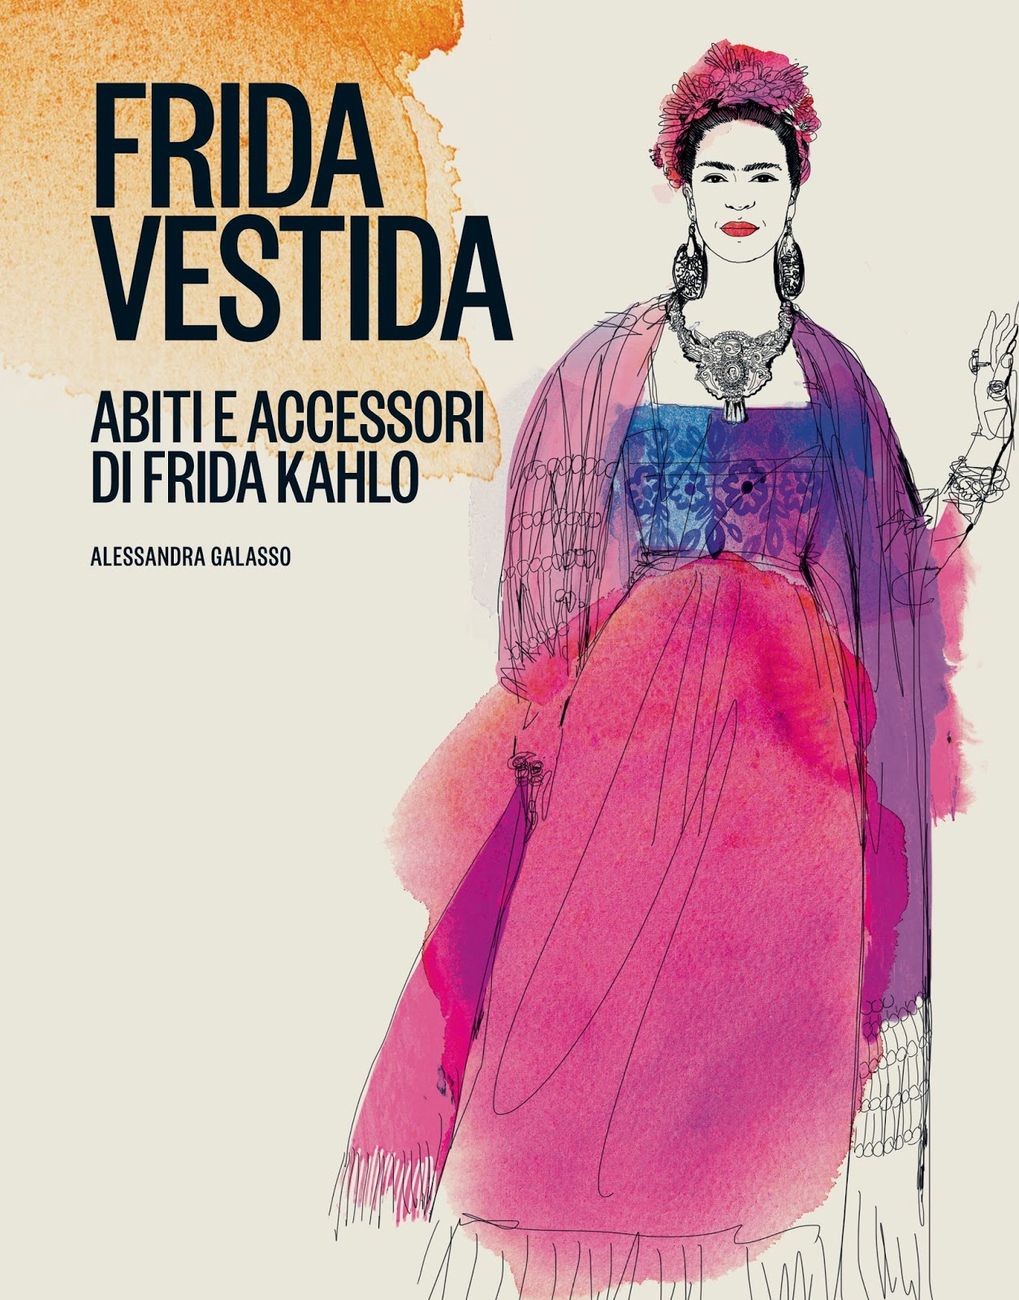 Alessandra Galasso – Frida vestida (24 Ore Cultura, Milano 2018)